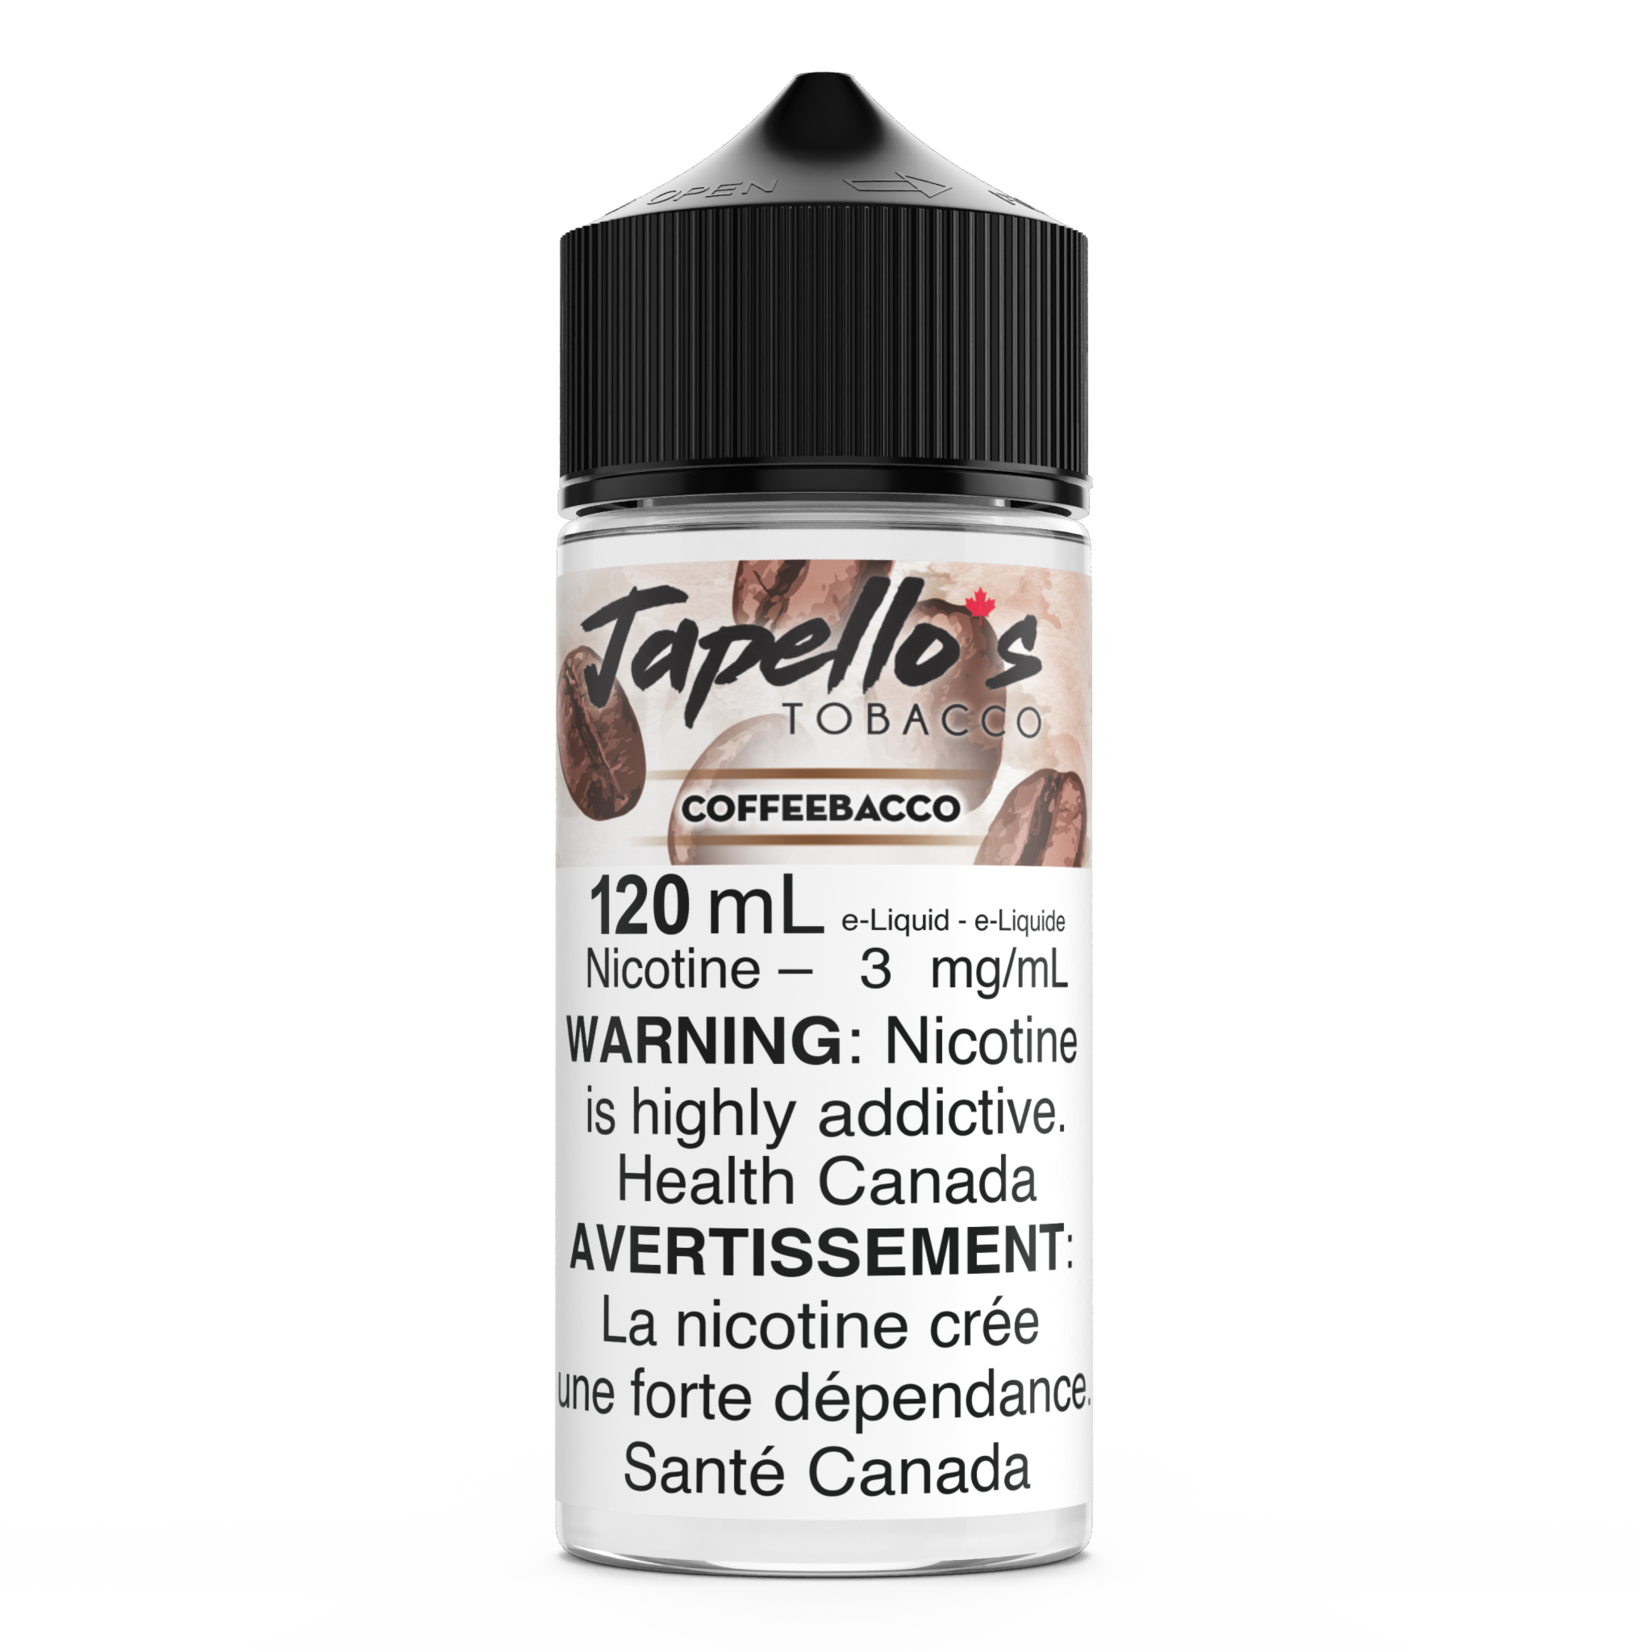 Tagged Japello's Tobacco